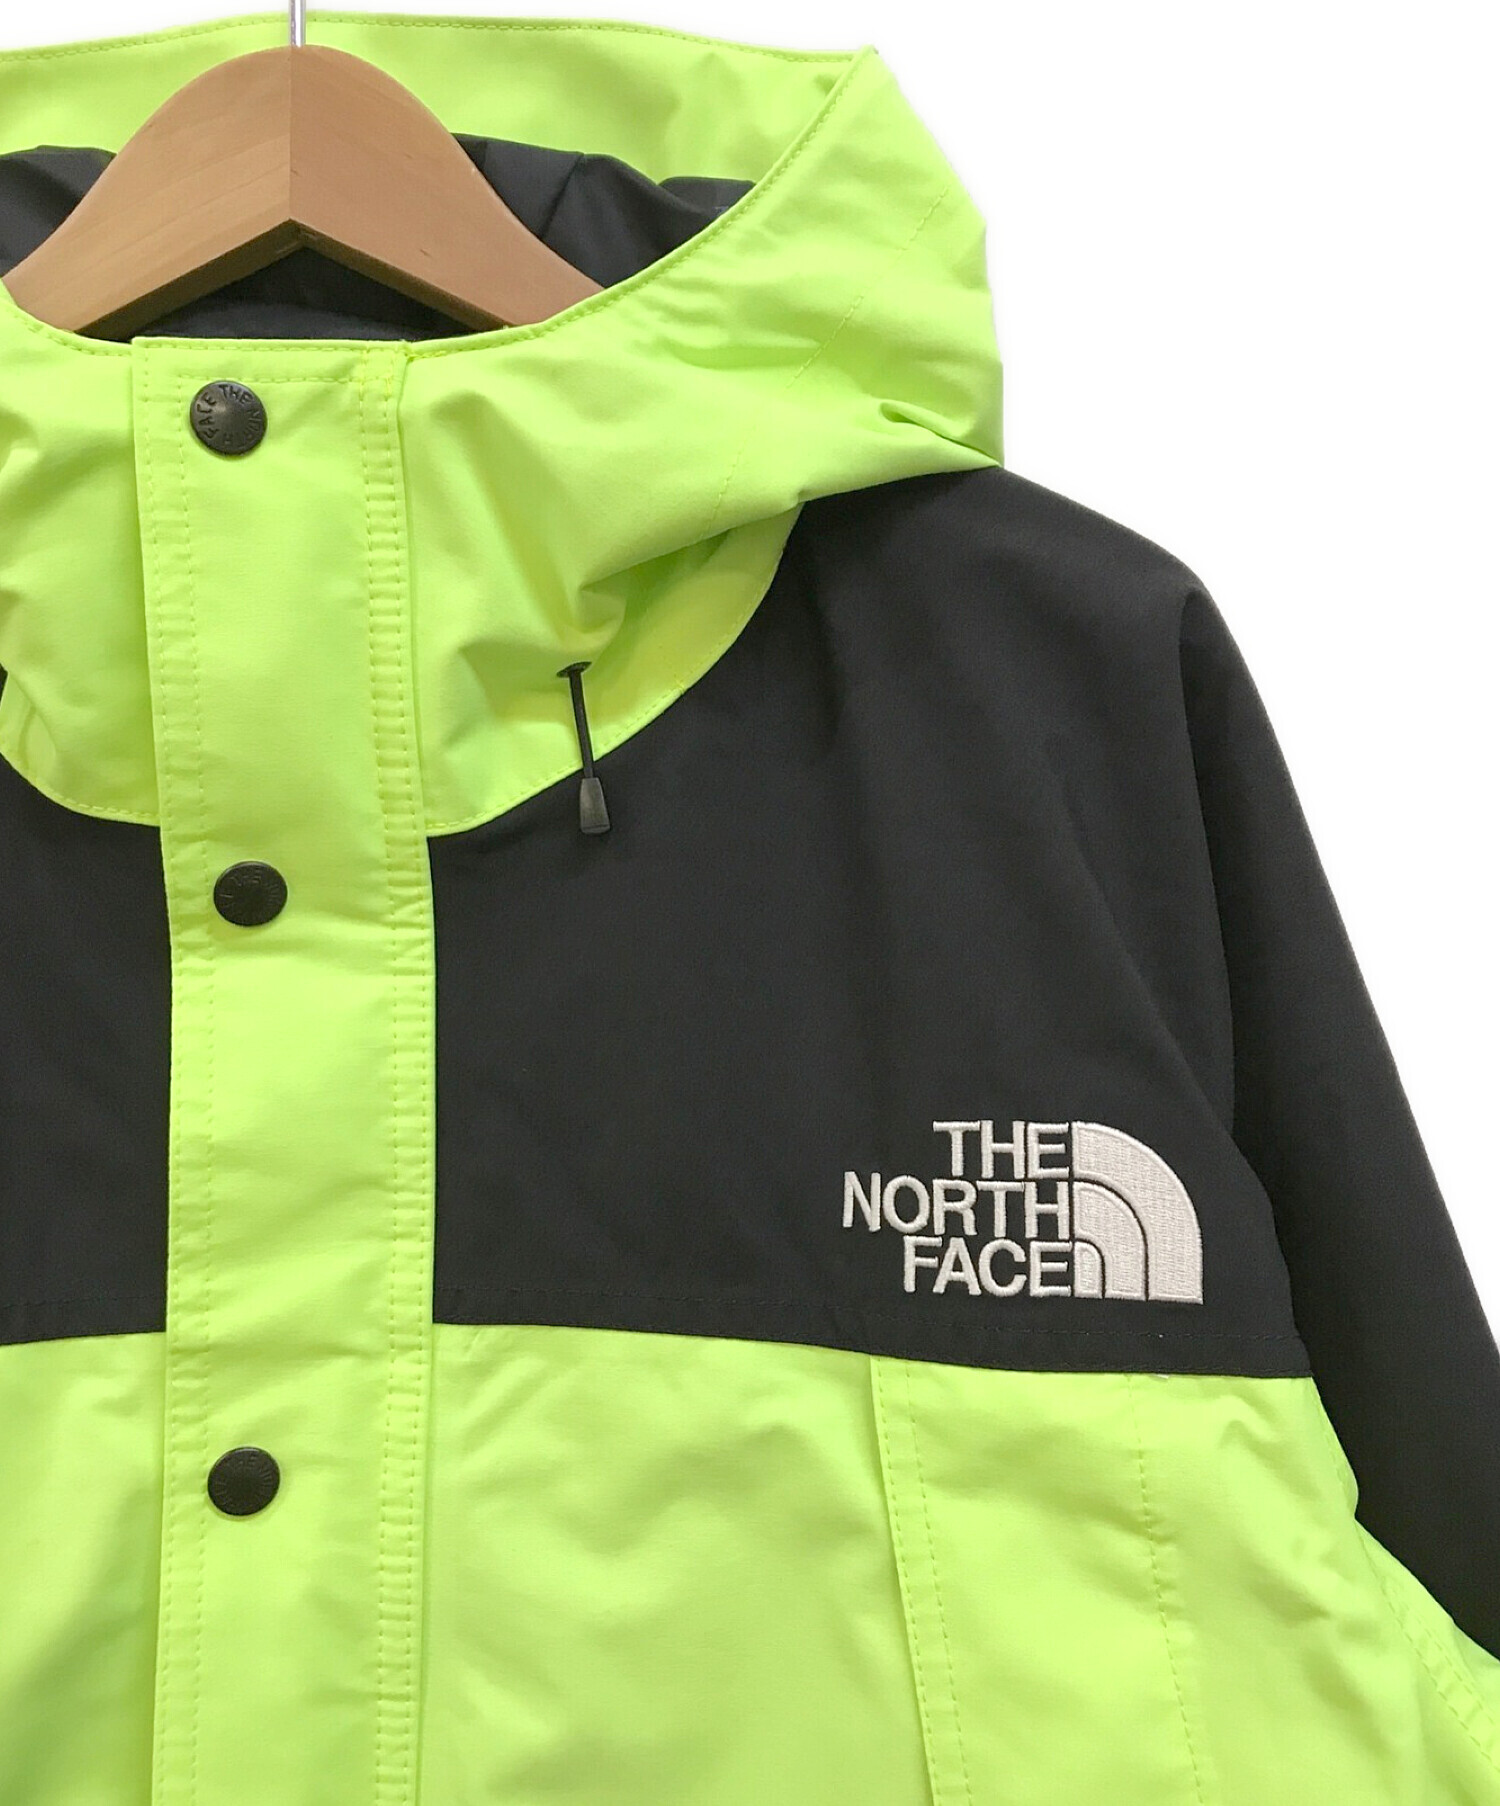 THE NORTH FACE (ザ ノース フェイス) Mountain Light Jacket セーフティーグリーン サイズ:XL 未使用品